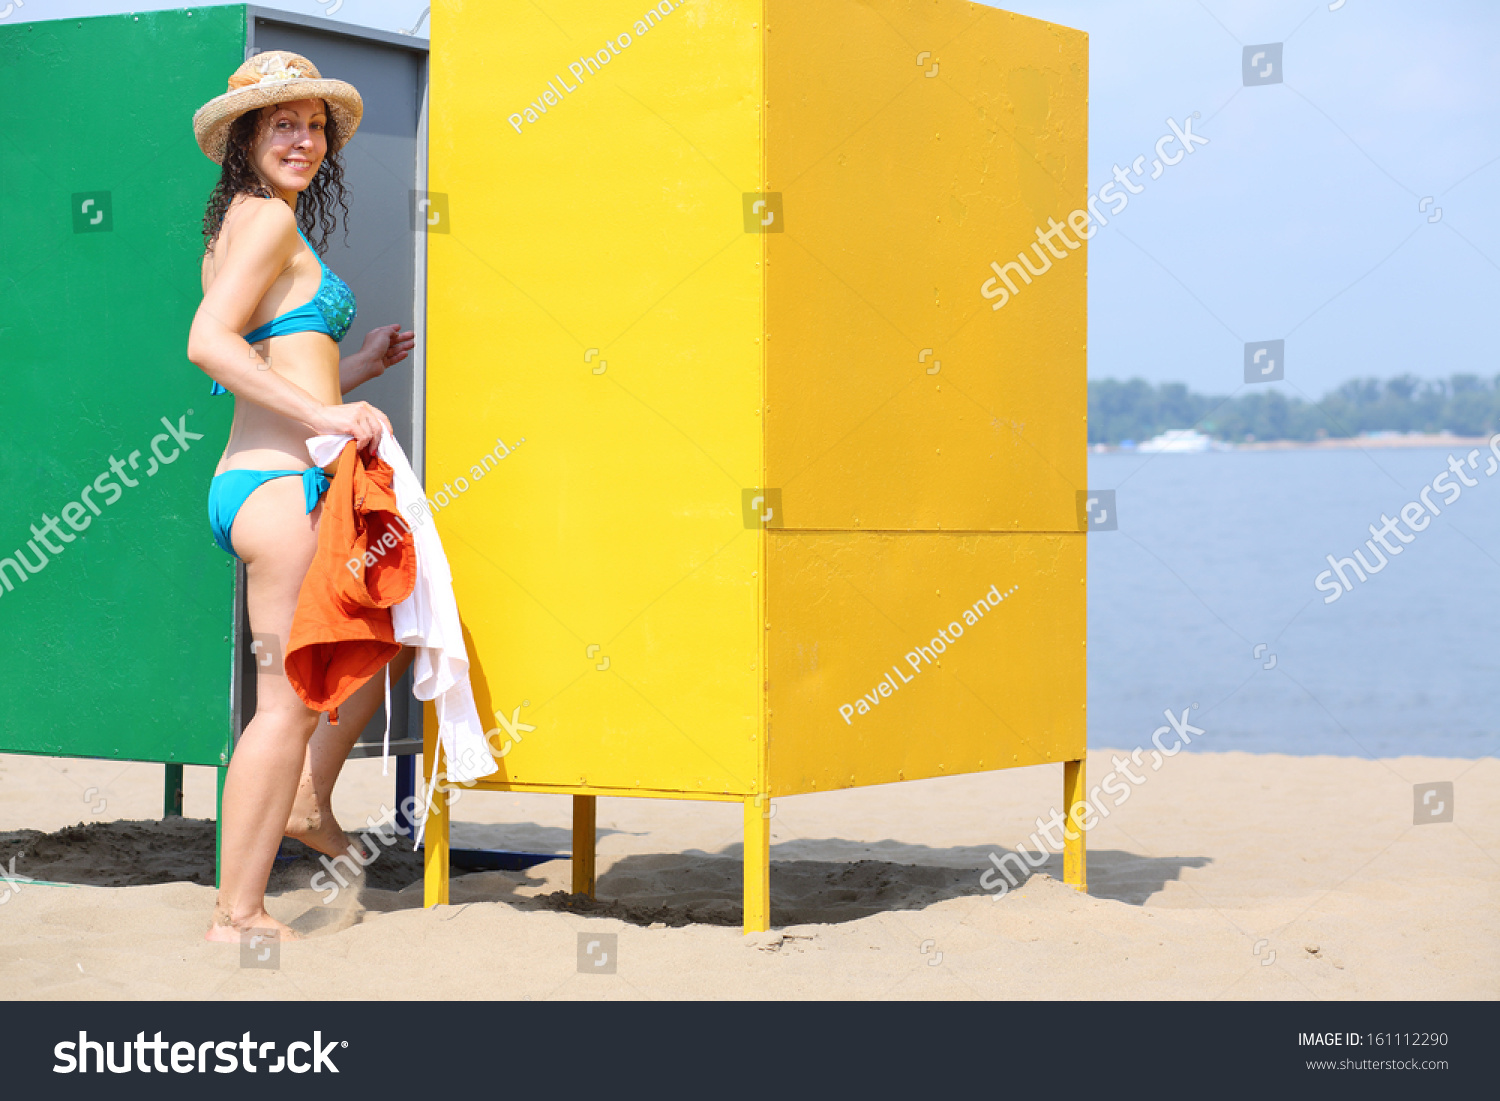 Женщина с красивой грудью в кабинке для переодевания на пляже